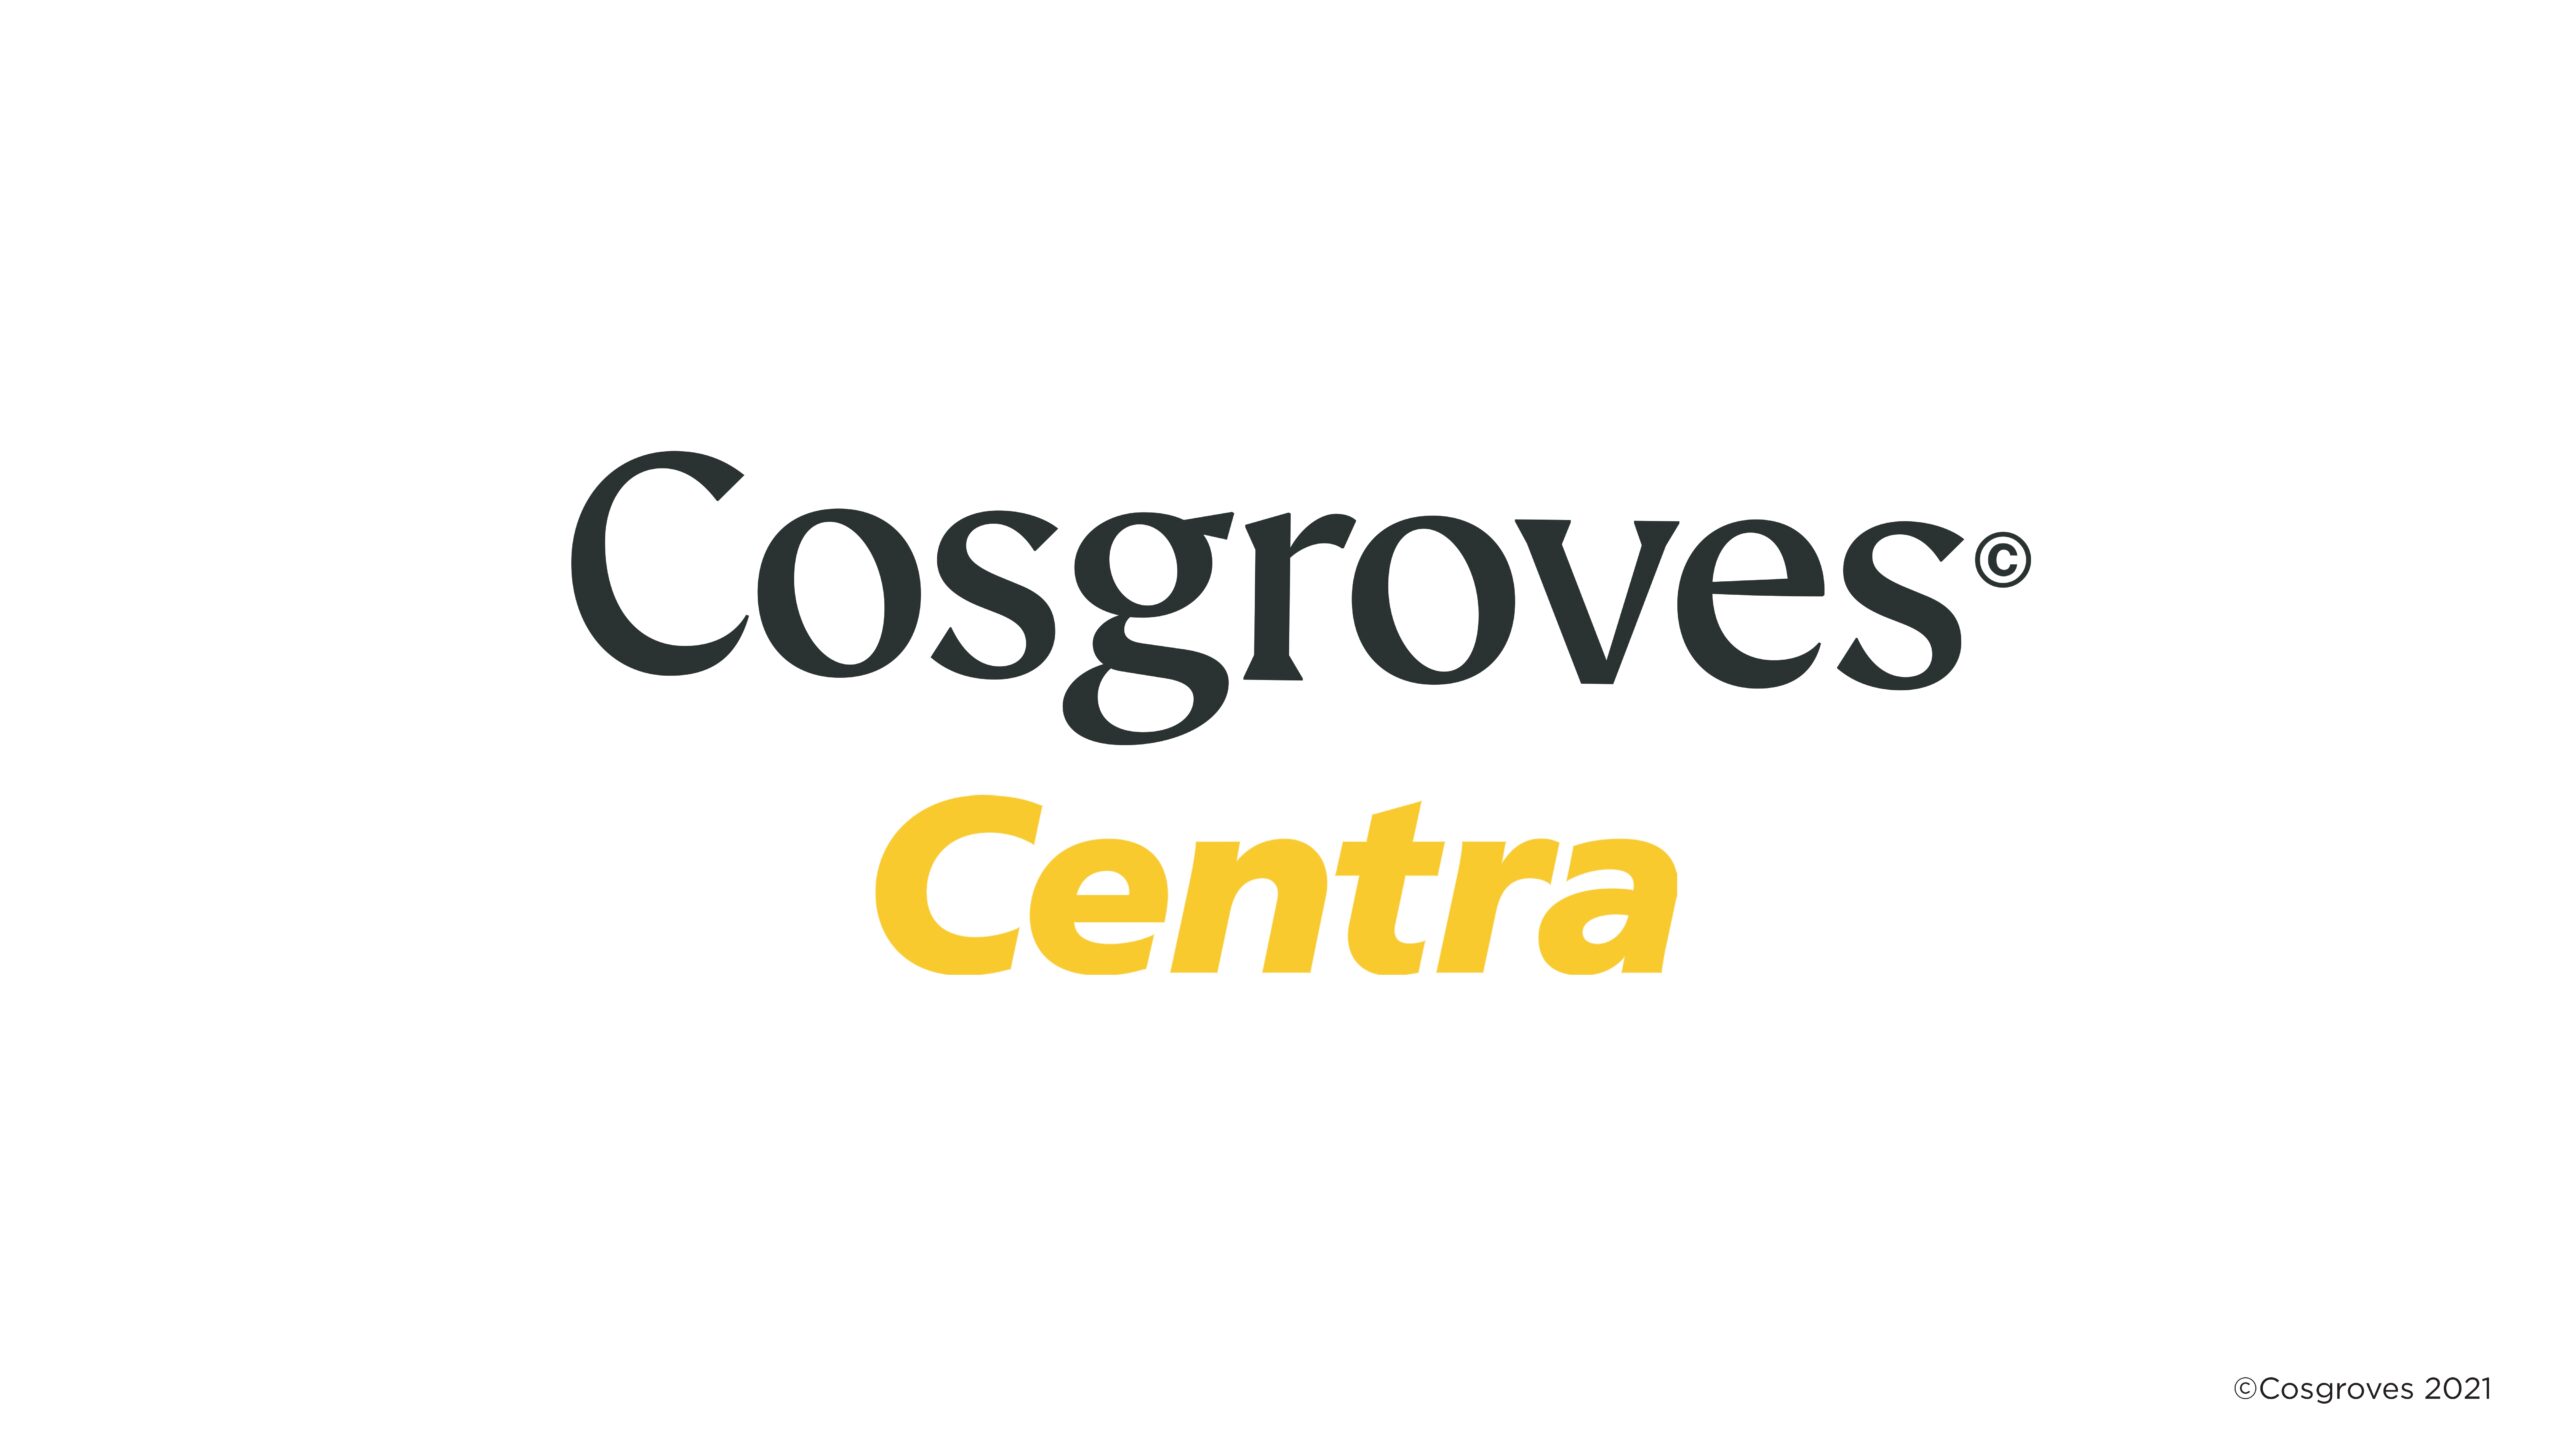 Cosgroves Centra